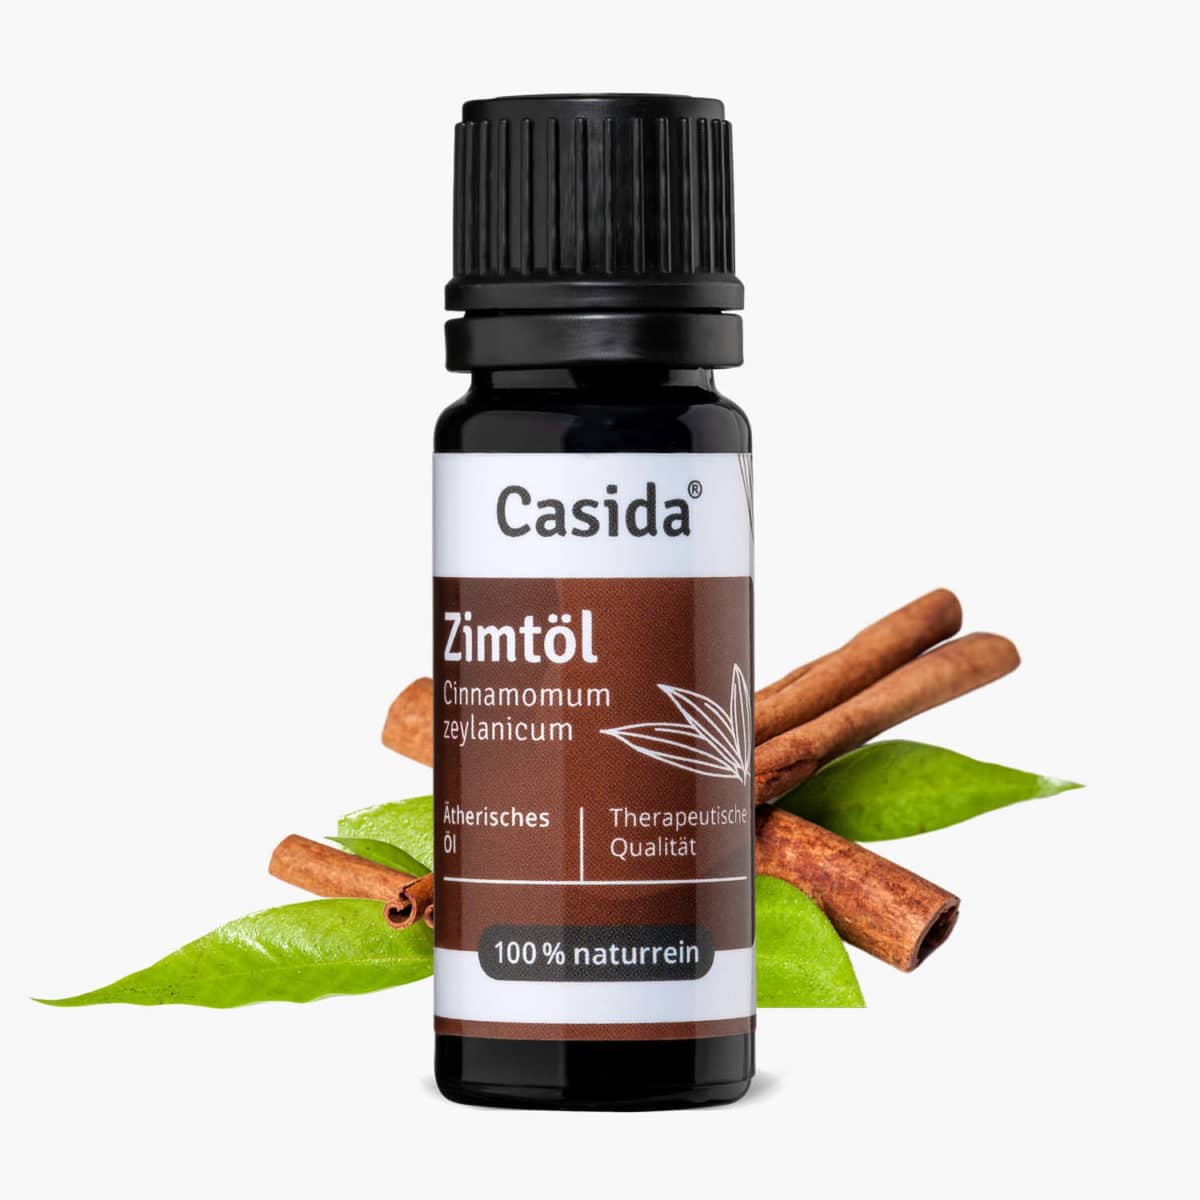 Casida Cinnamon Oil Cinnamomum zeylanicum naturrein – 10 ml 16486826 PZN Apotheke ätherische Öle Diffuser Blätter und Zweige